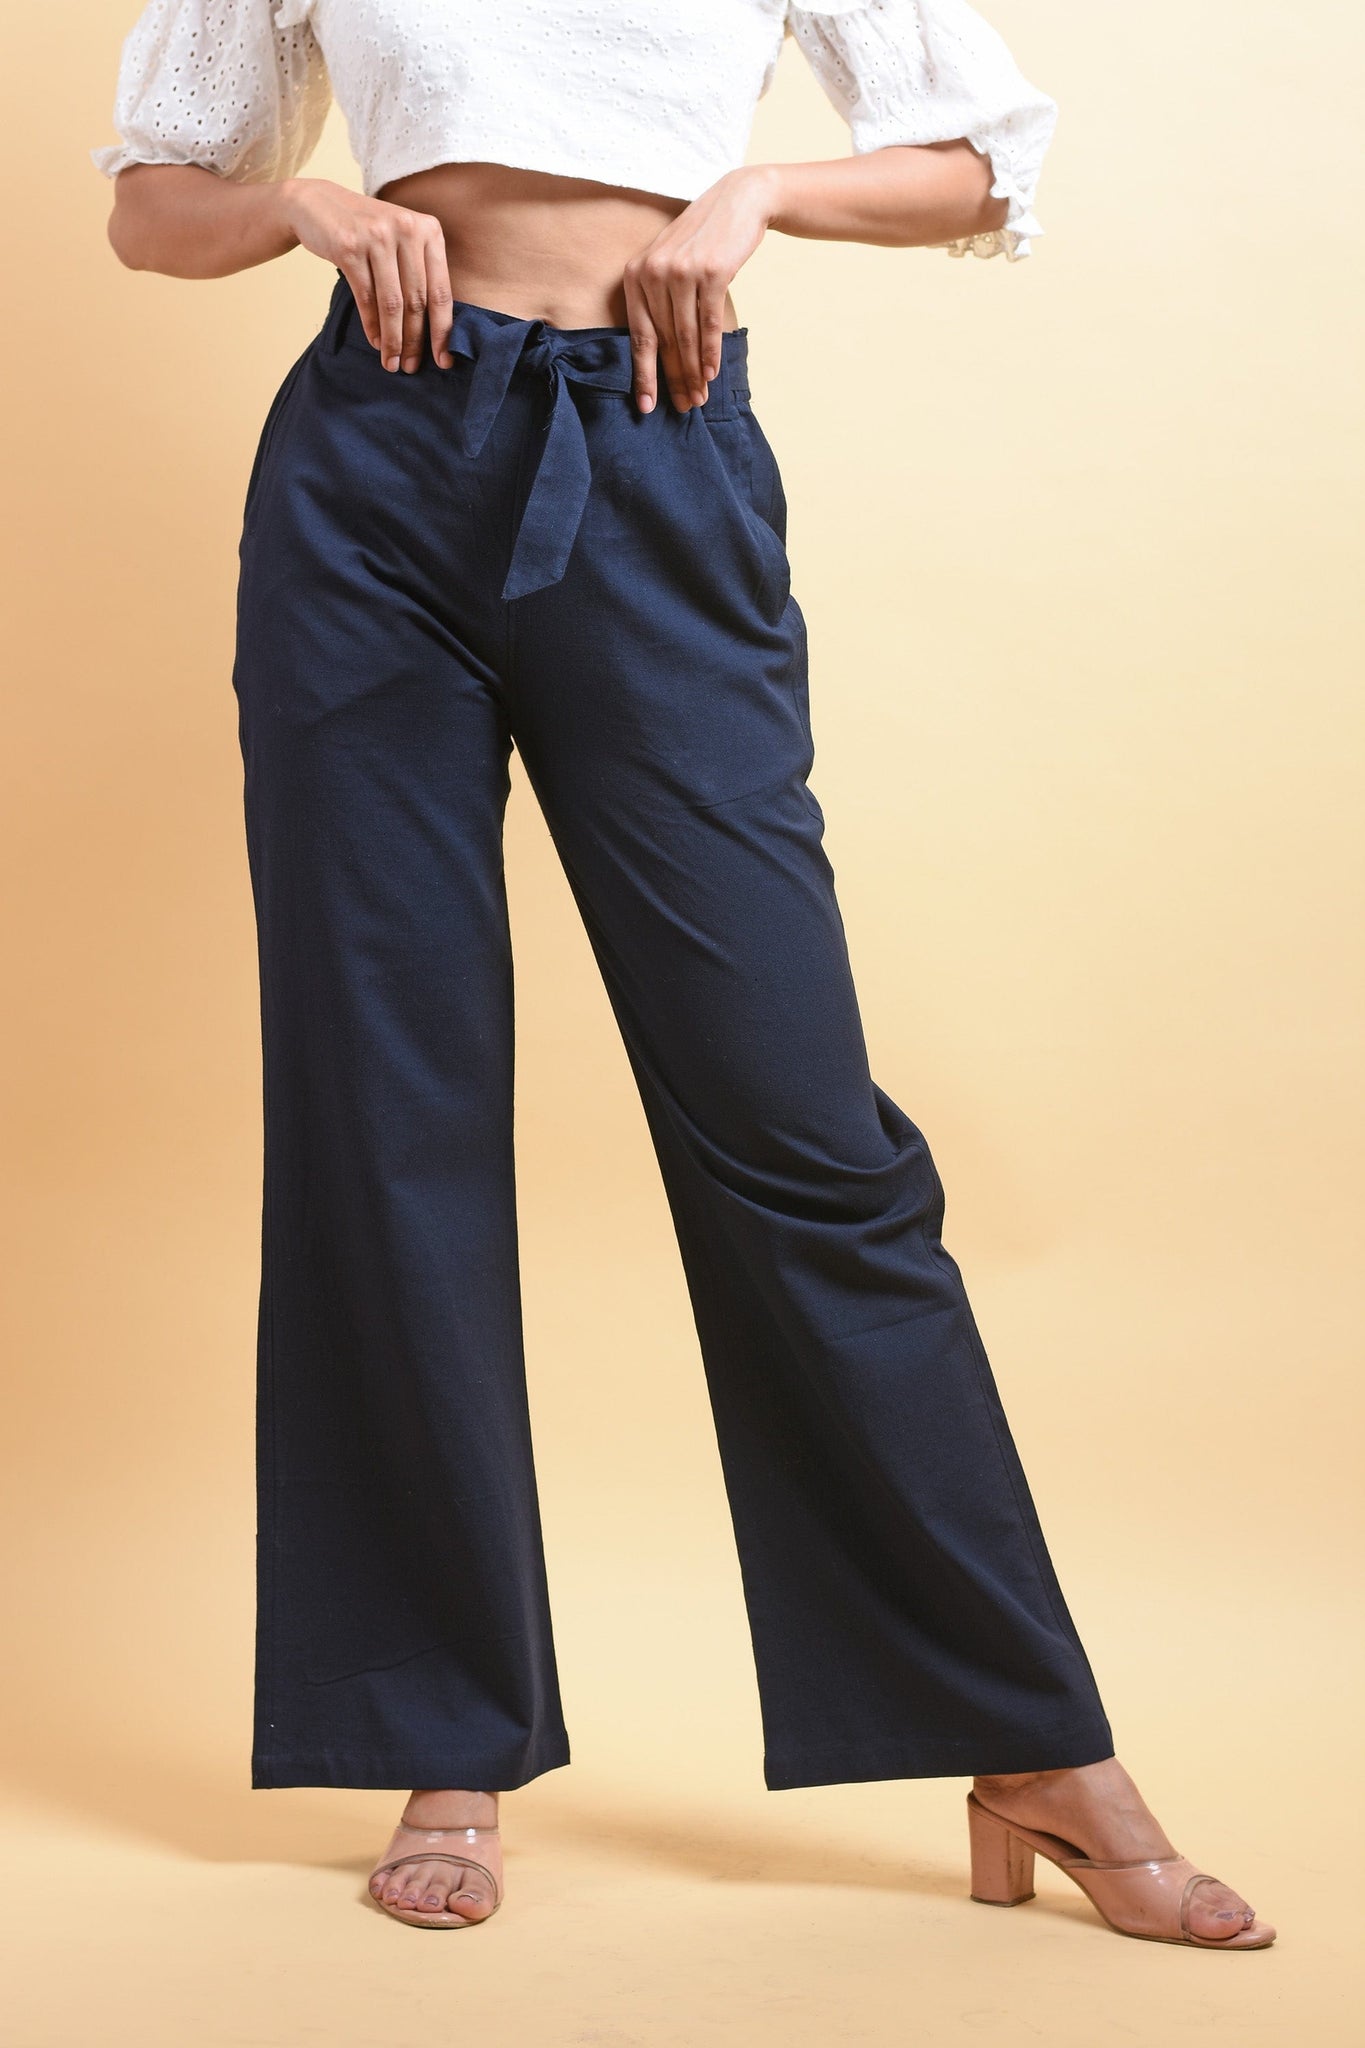 SONPARI Cotton Ladies Pants, Size: L XL XXL XXXL at Rs 275/pcs in Indore